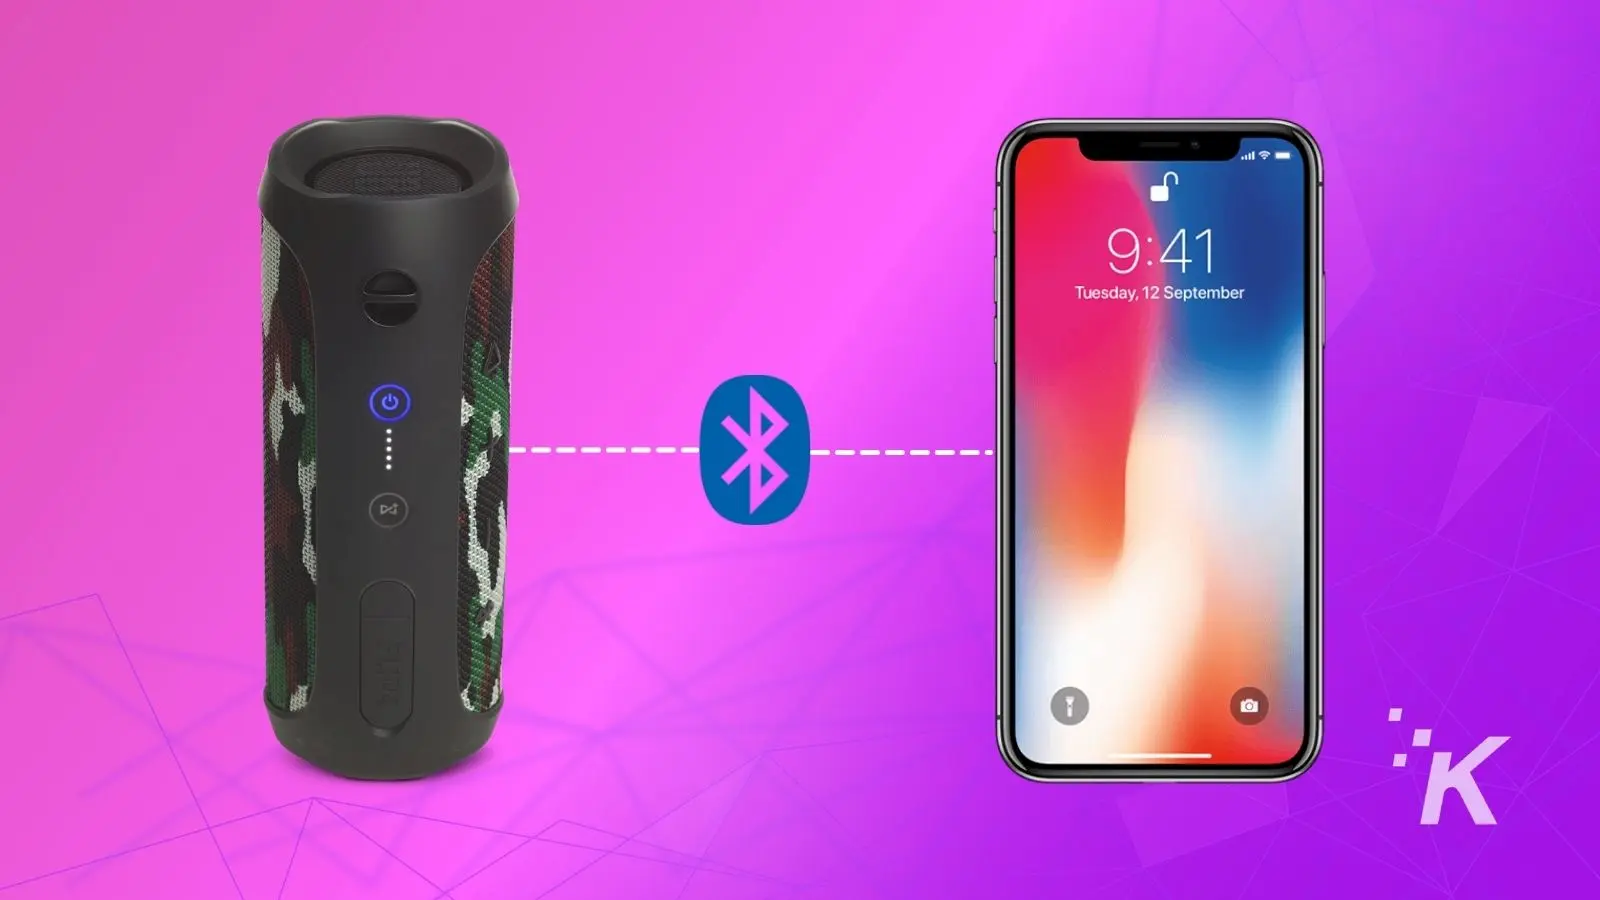 altavoces jbl junto a un iphone que muestran cómo conectar